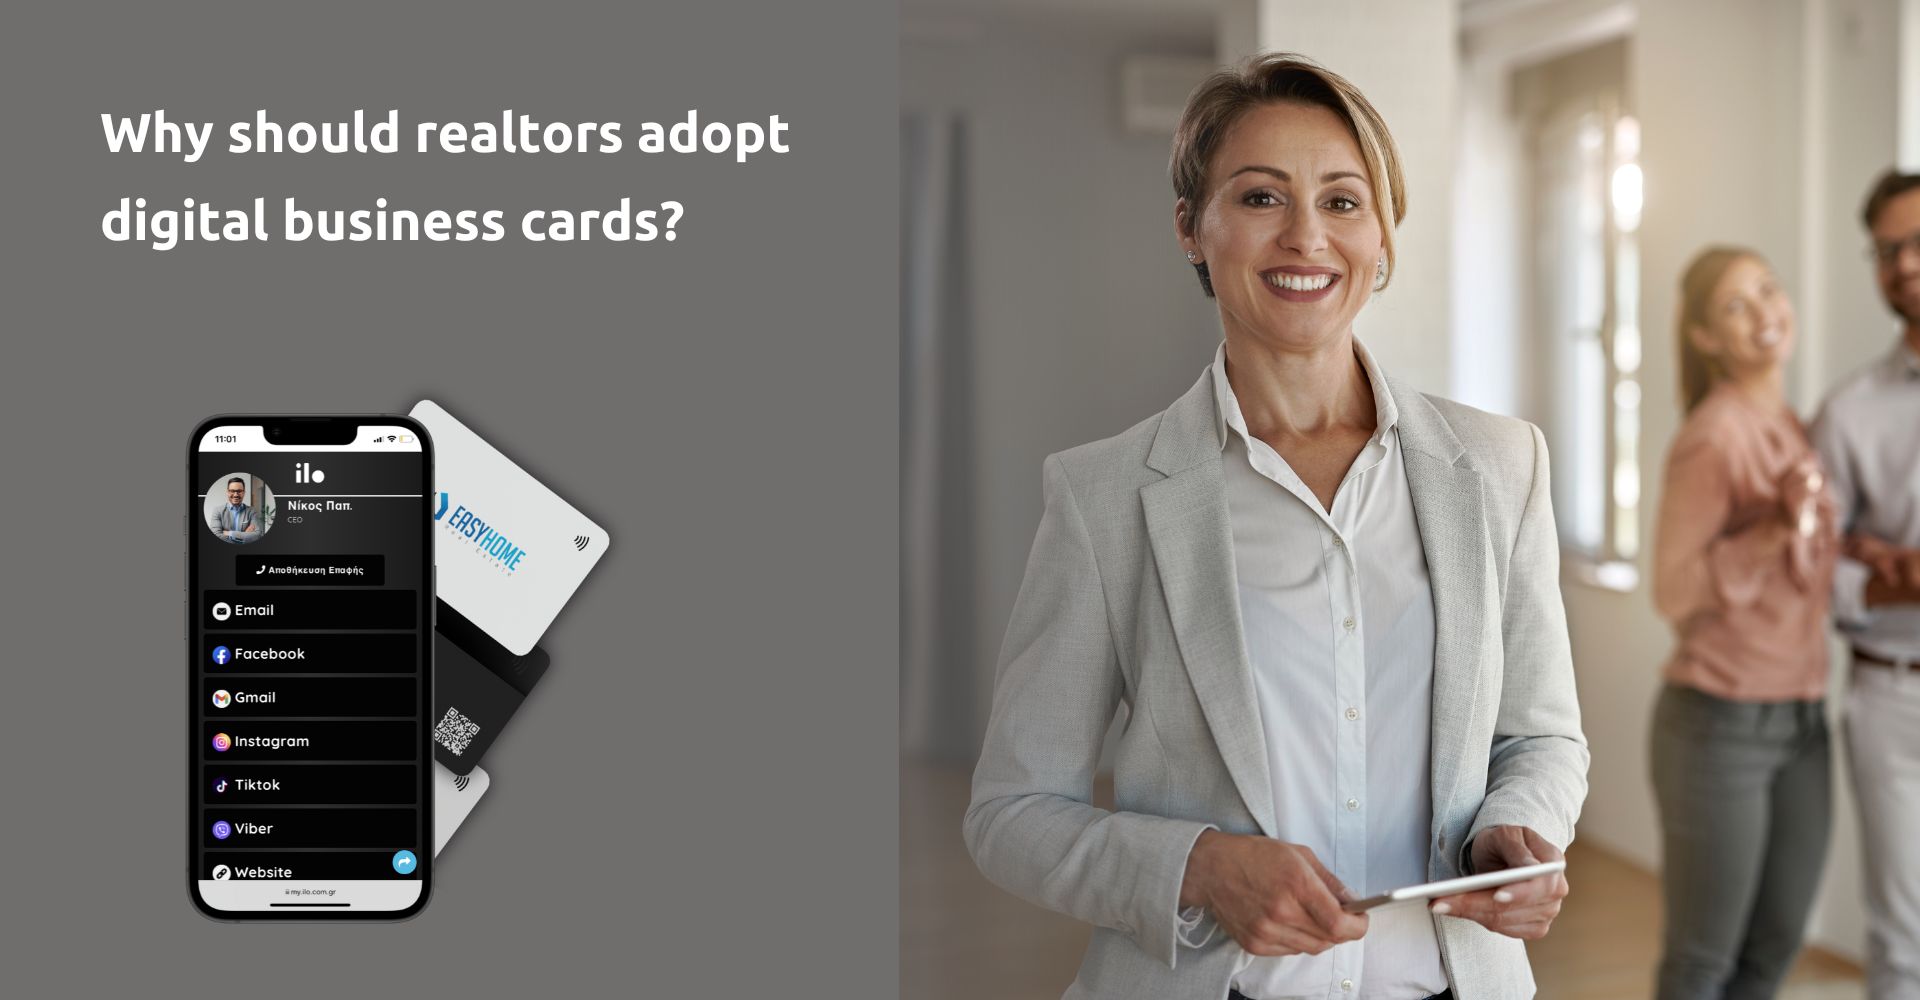 Γιατί να υιοθετήσουν οι μεσίτες ψηφιακές επαγγελματικές κάρτες;